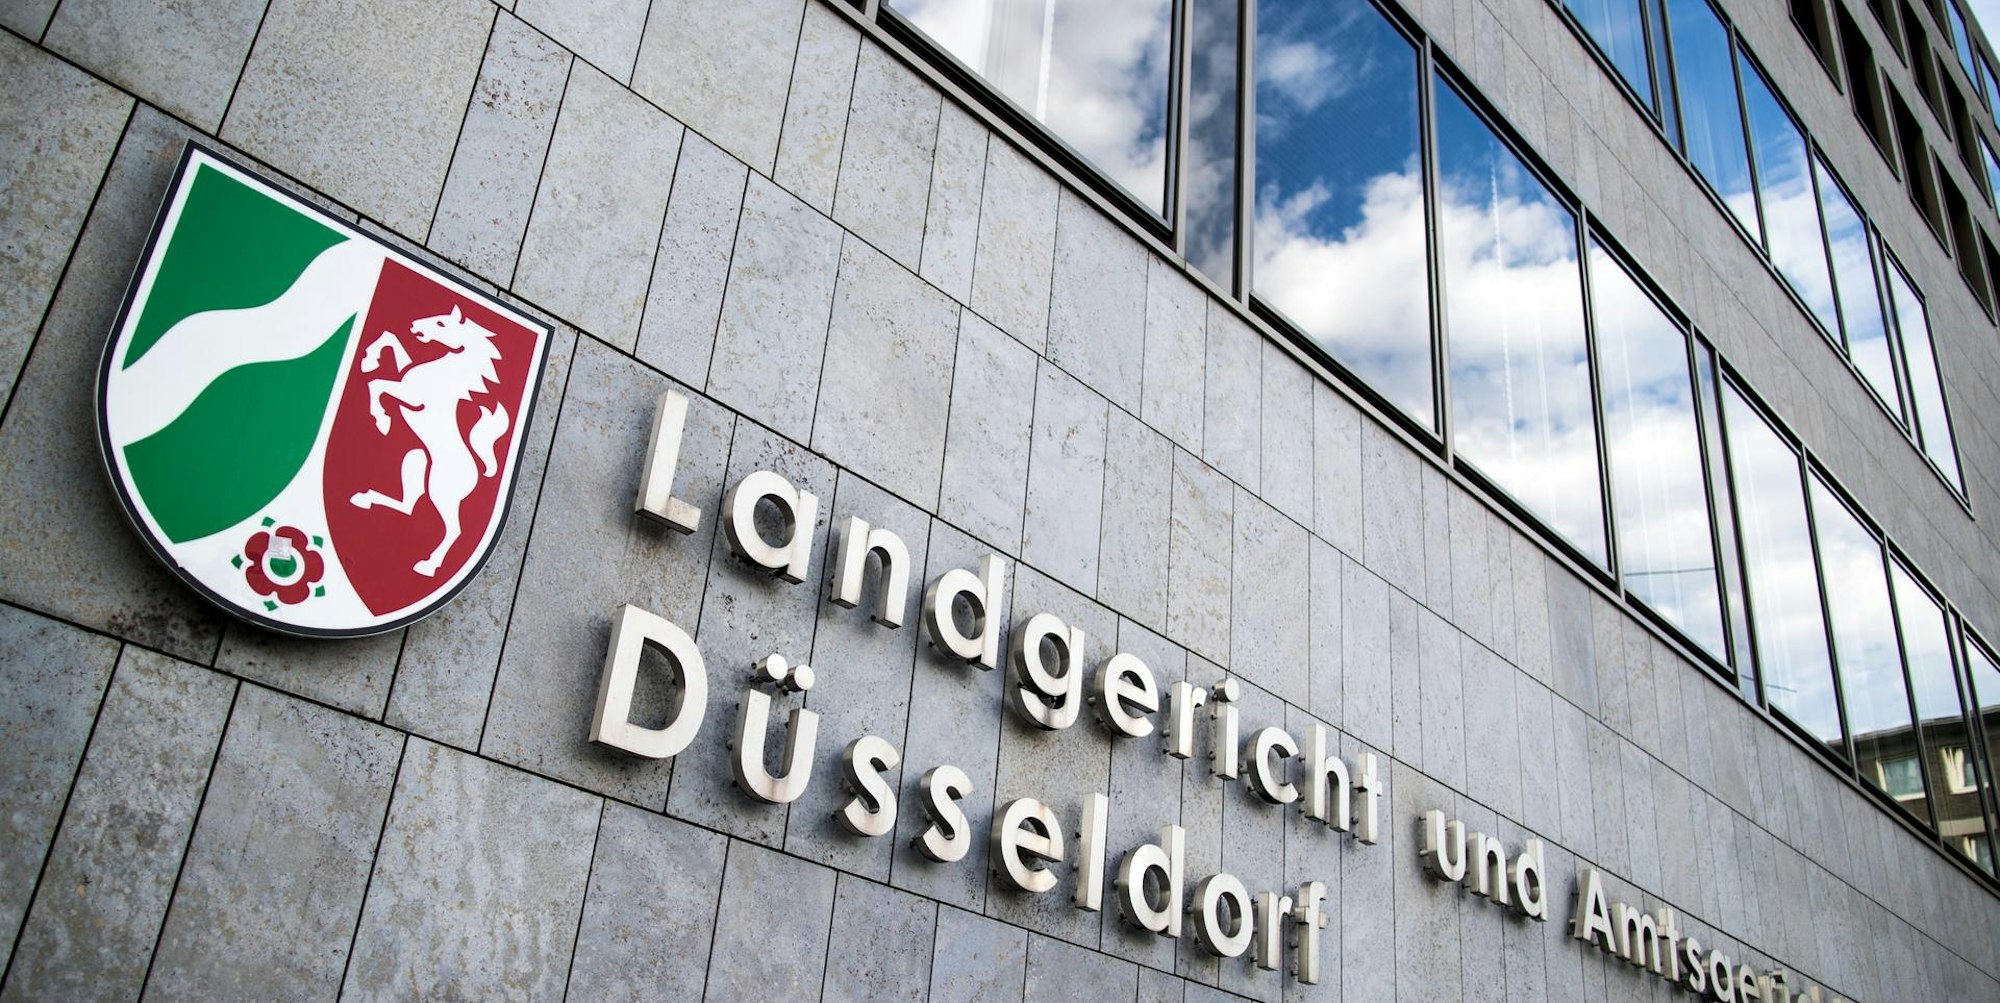 Landgericht Dusseldorf